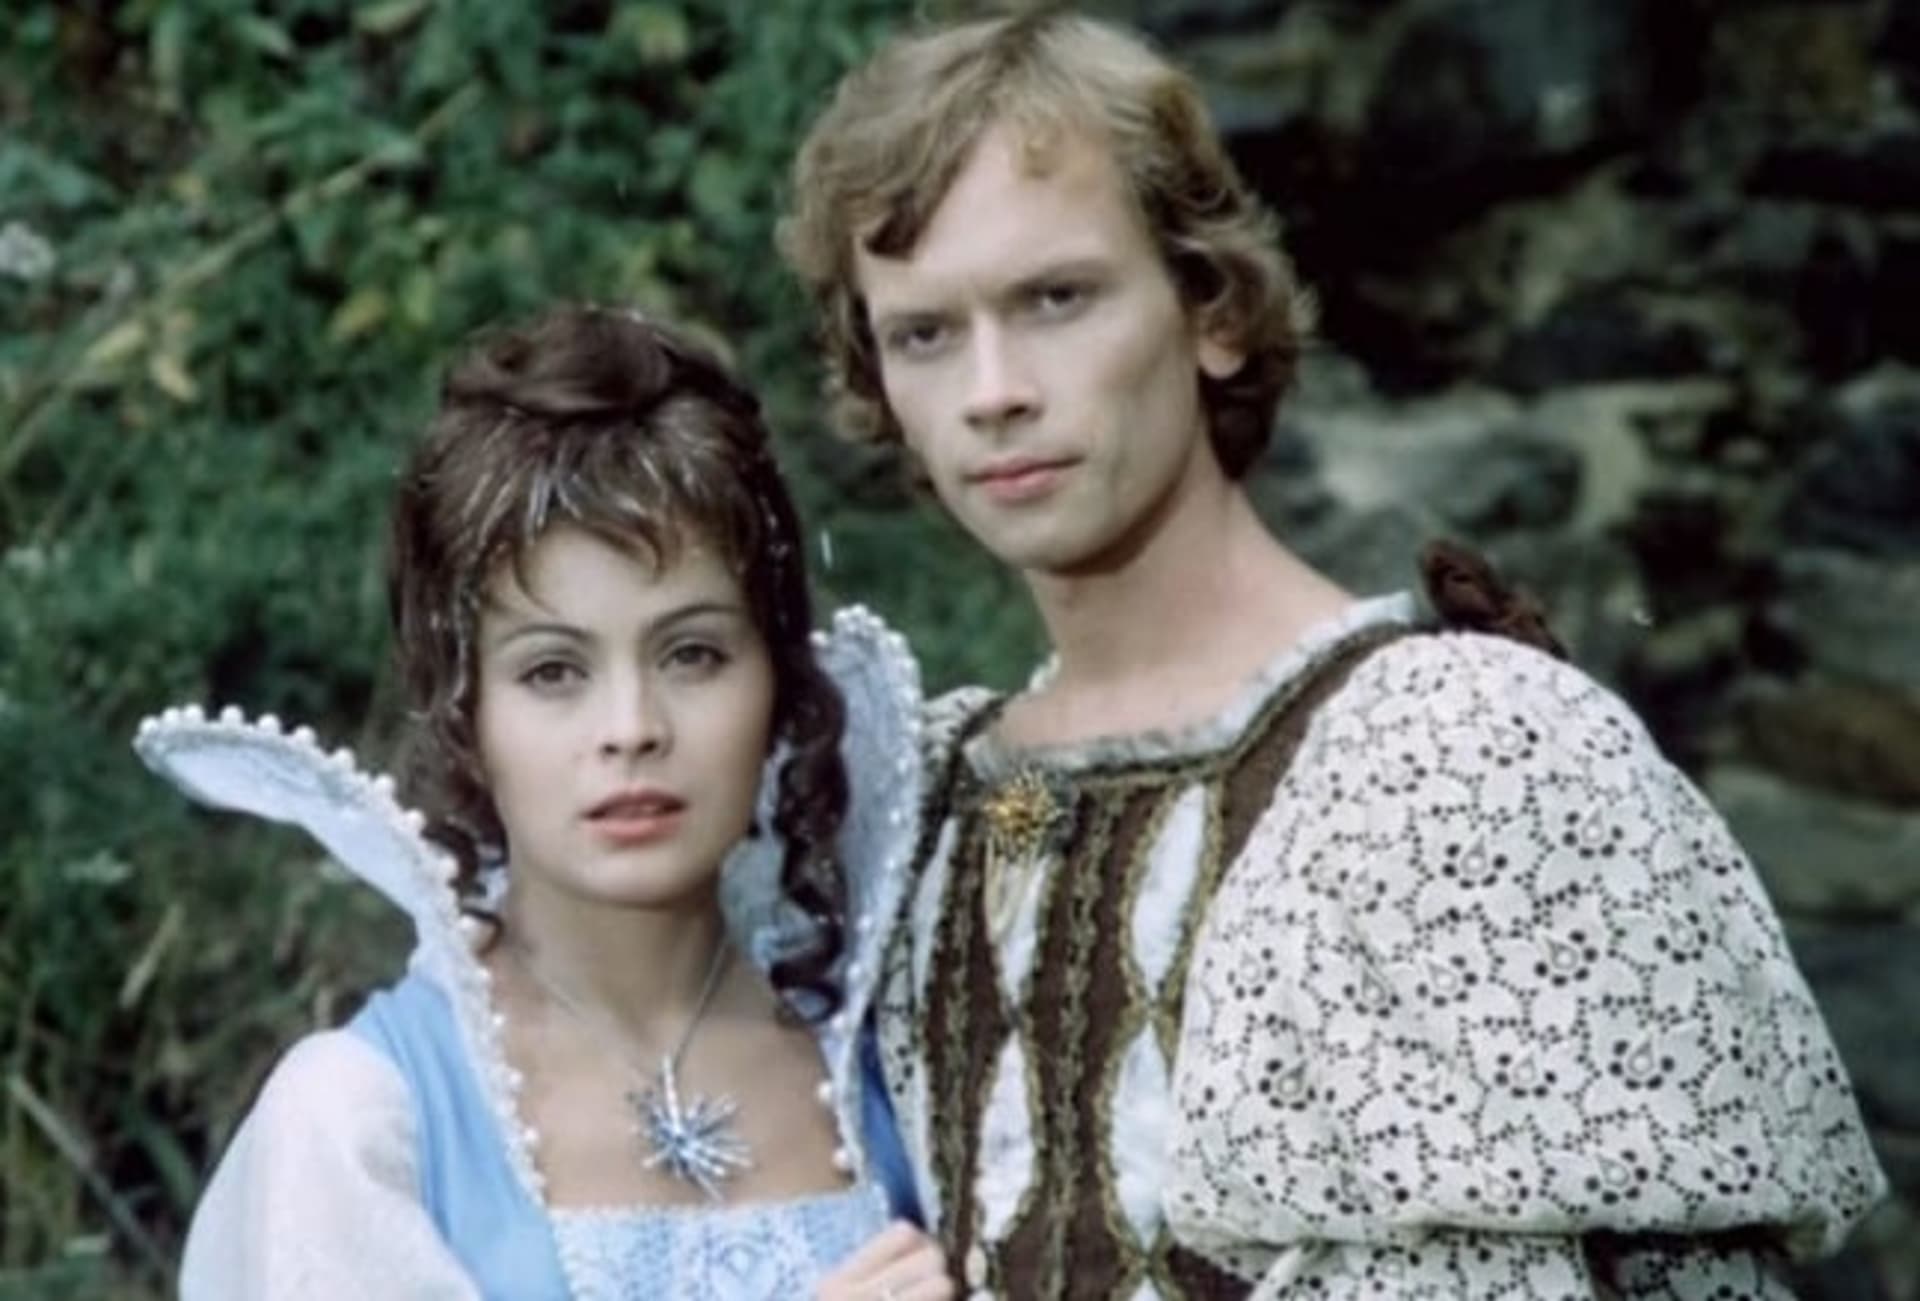 Pohádka Princ a Večernice s okouzlující herečkou Libuší Šafránkovou natočená v roce 1978 baví už několik generací.